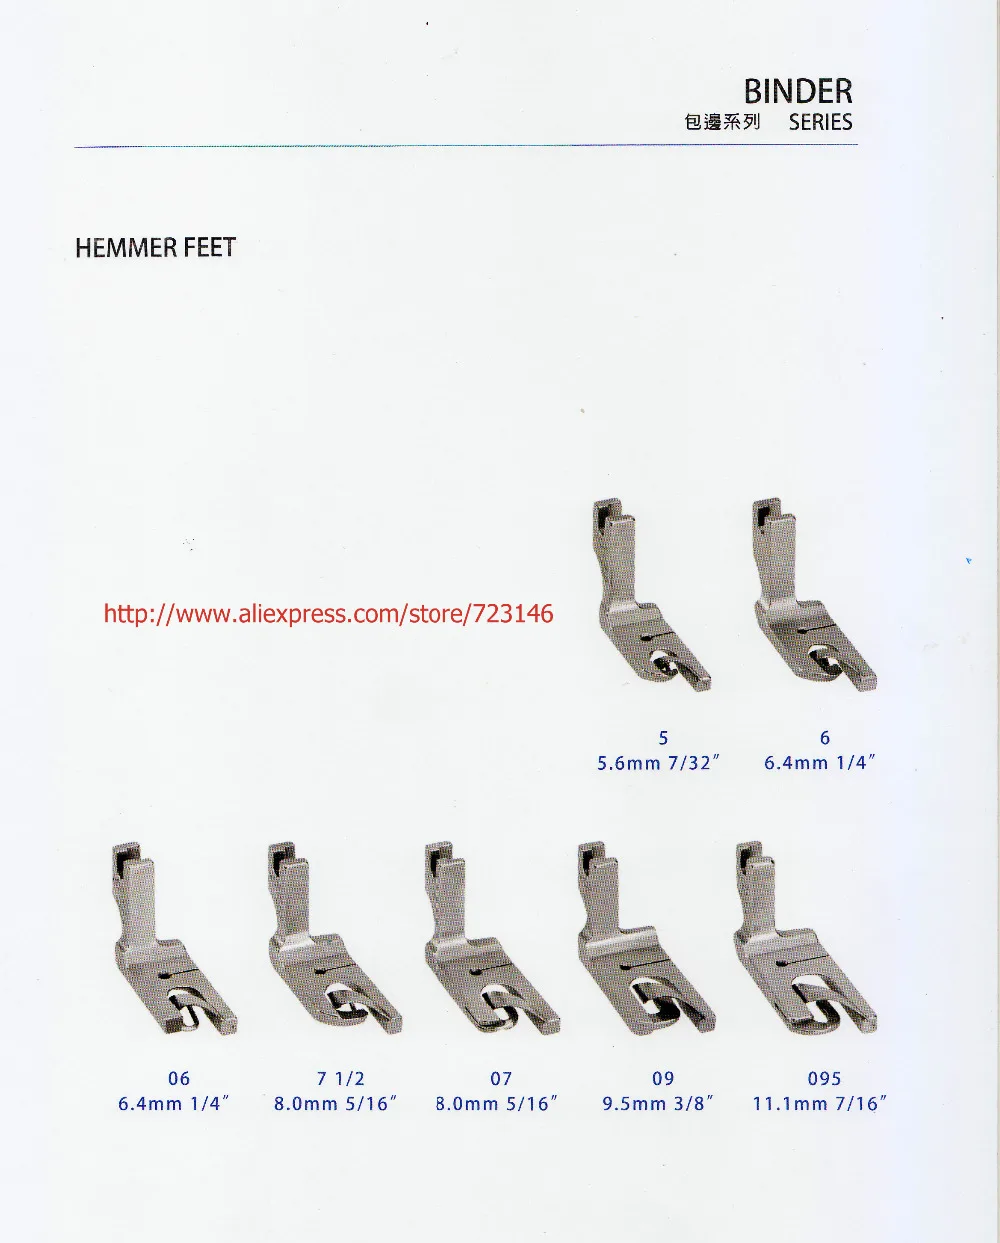 

4pcs HEMMER FEET SERIES industrial lockstitch sewing machine presser foot 8.0mm 5/16" 8.0mm 5/16" 9.5mm 3/8" 11.1mm 7/16"